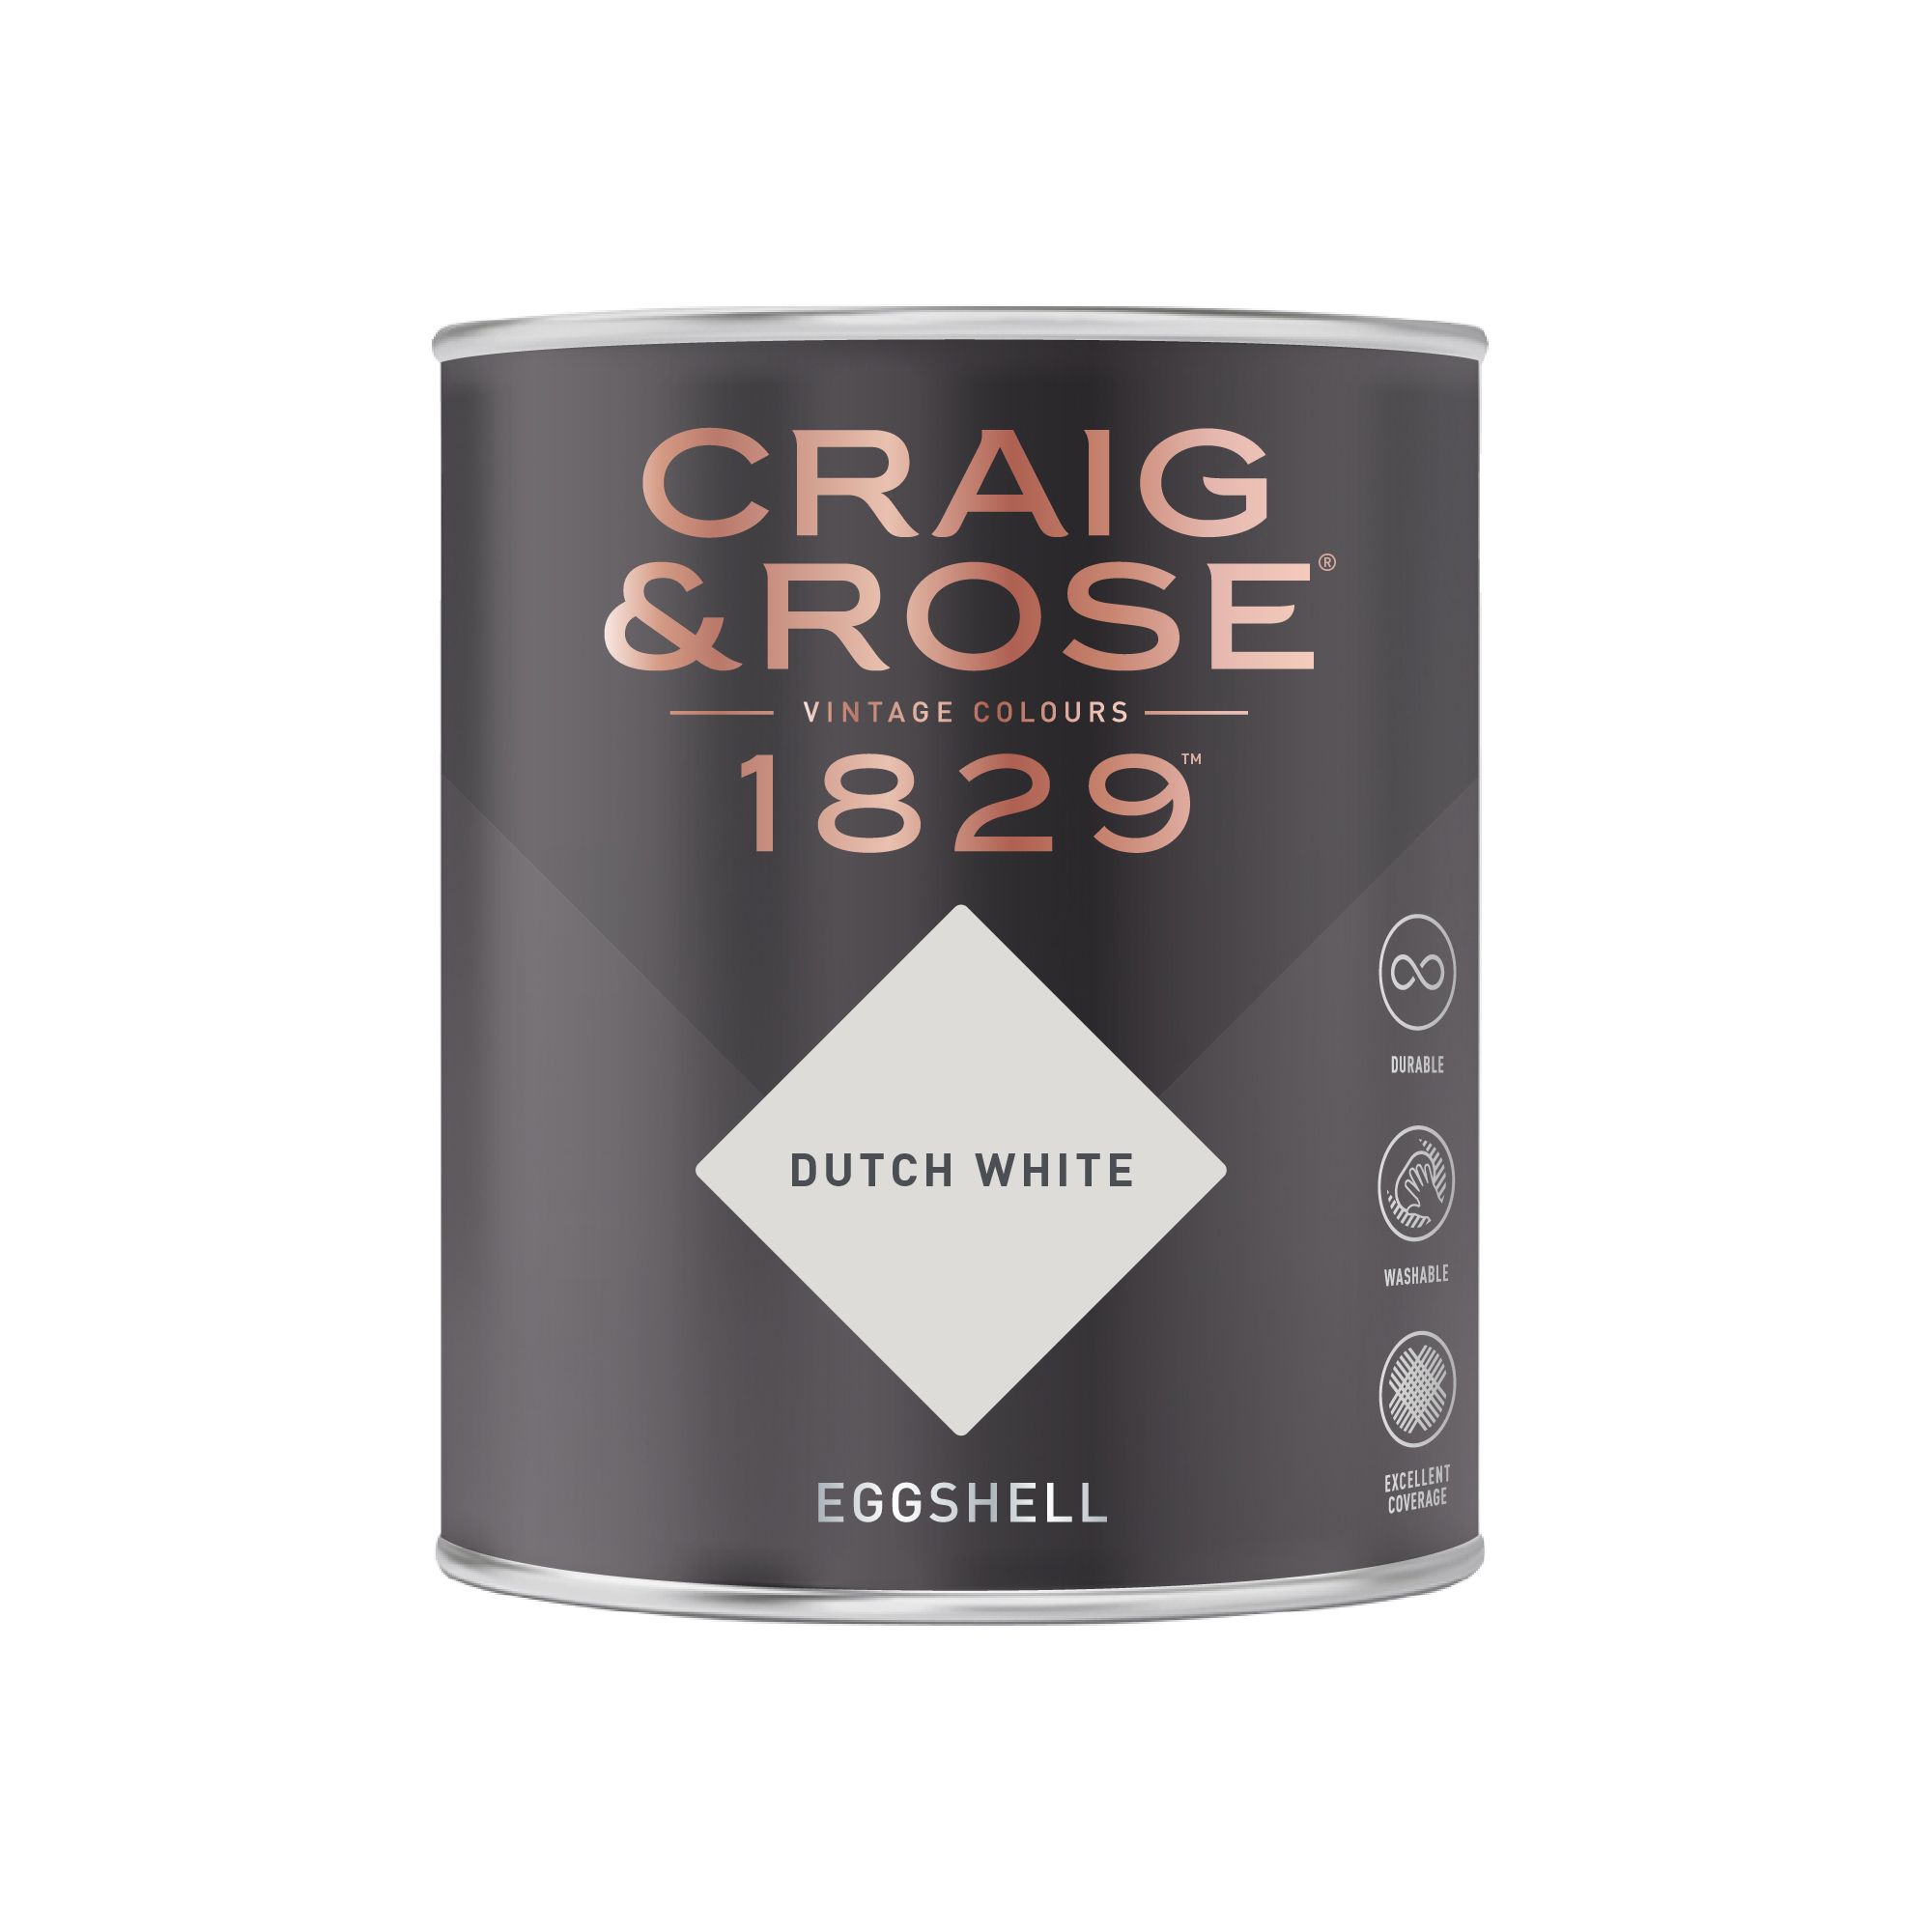 Craig & Rose 1829 Dutch White Eggshell Wall paint, 750ml